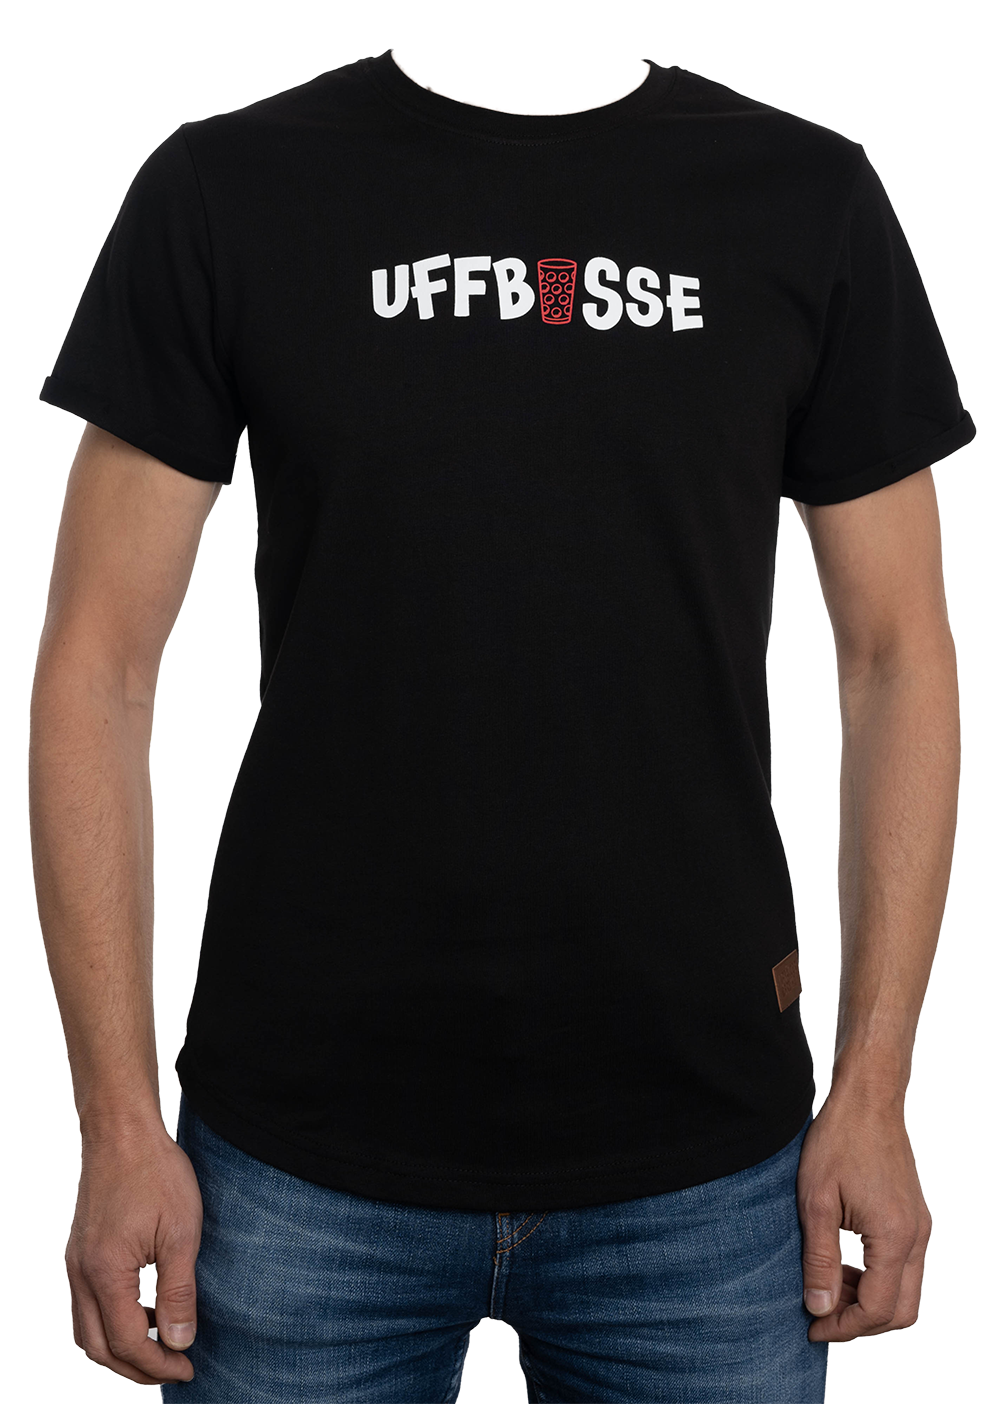 Herren T-Shirt "UFFBASSE" - Pfälzer Freiheit